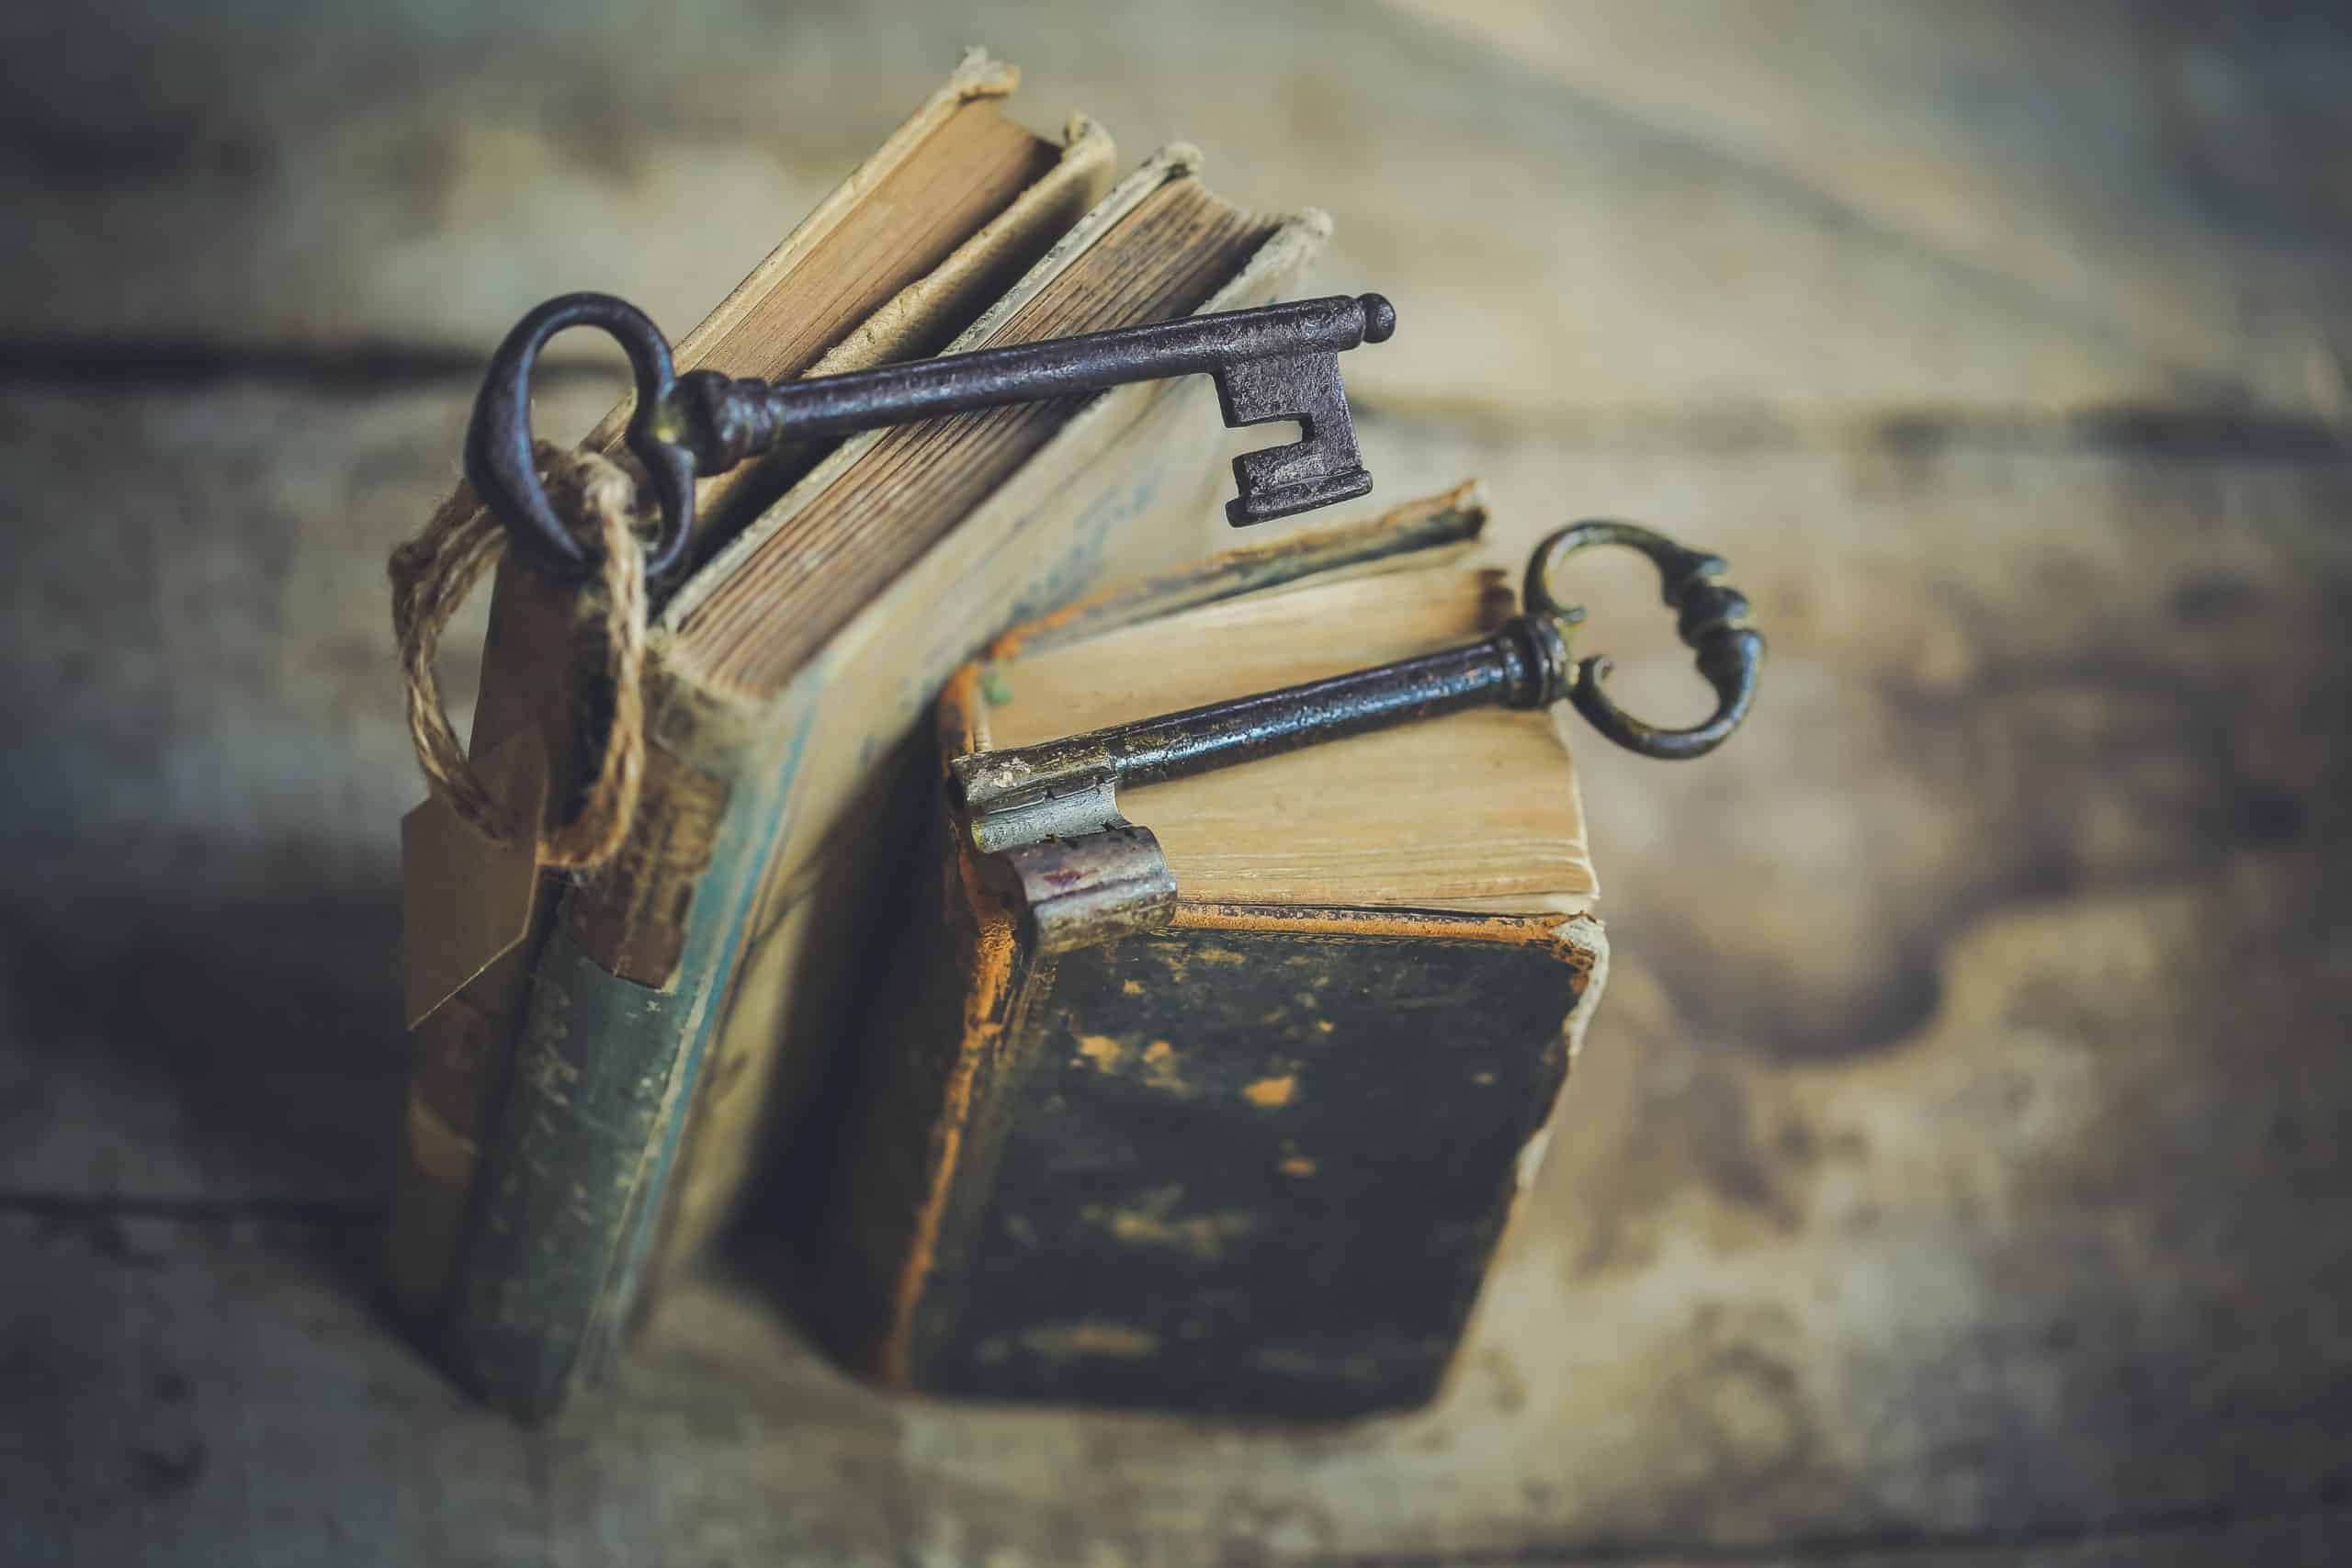 Old books and vintage keys